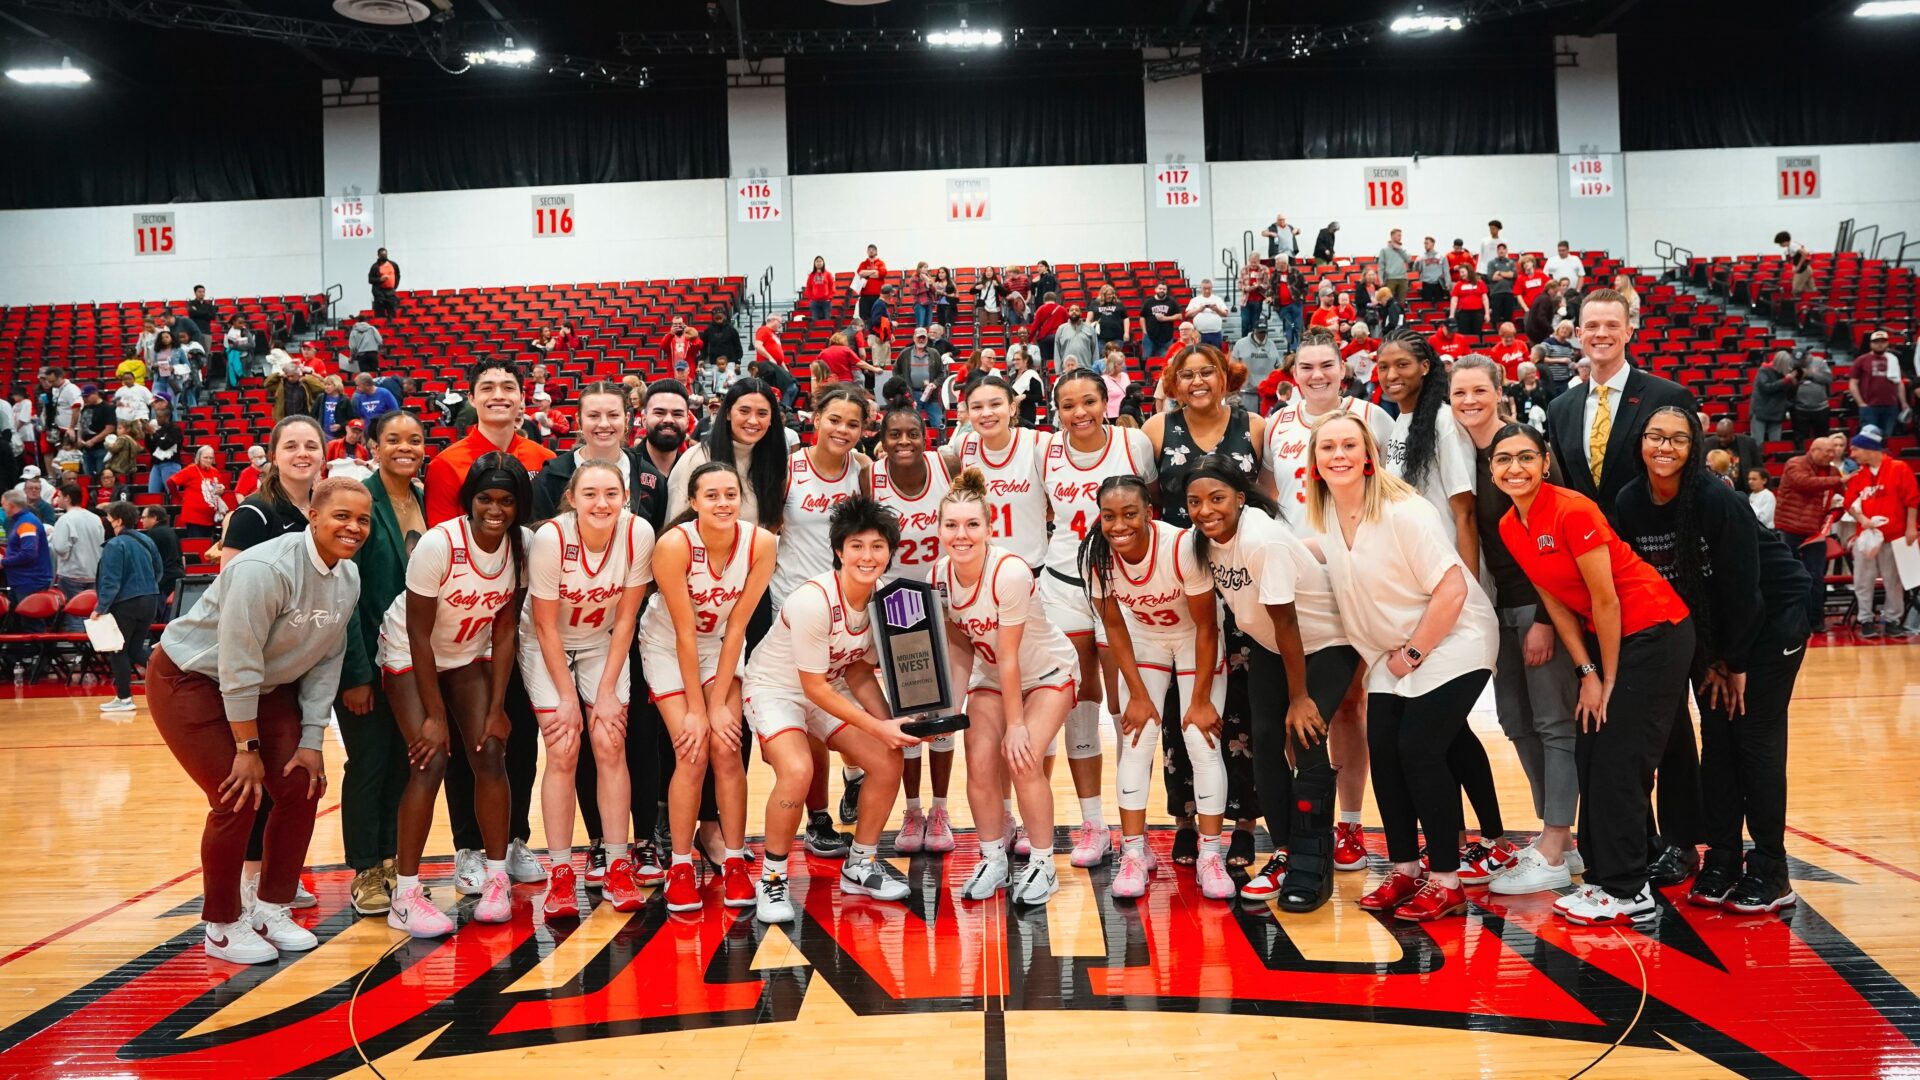 El equipo de baloncesto femenino Lady Rebels de la UNLV se reunió con orgullo en la cancha, sonriendo y posando con un trofeo de campeonato, ejemplificando el espíritu de equipo y el éxito que se puede lograr mediante el uso efectivo del análisis de video y el desarrollo estratégico.